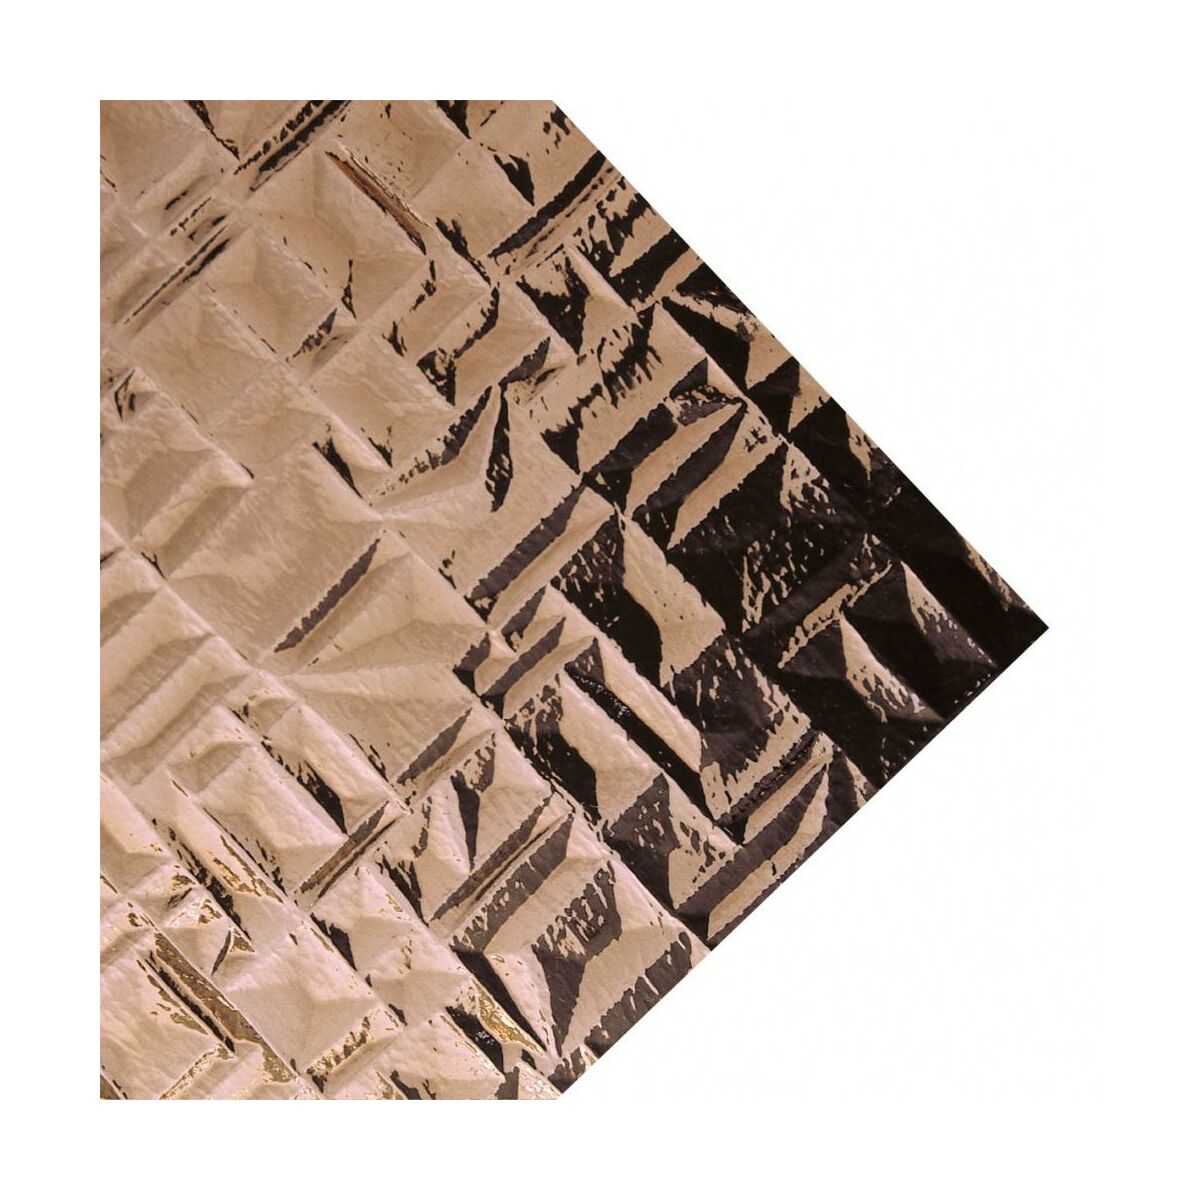 Szkło syntetyczne Piramida Dymne 54 x 44 cm Robelit